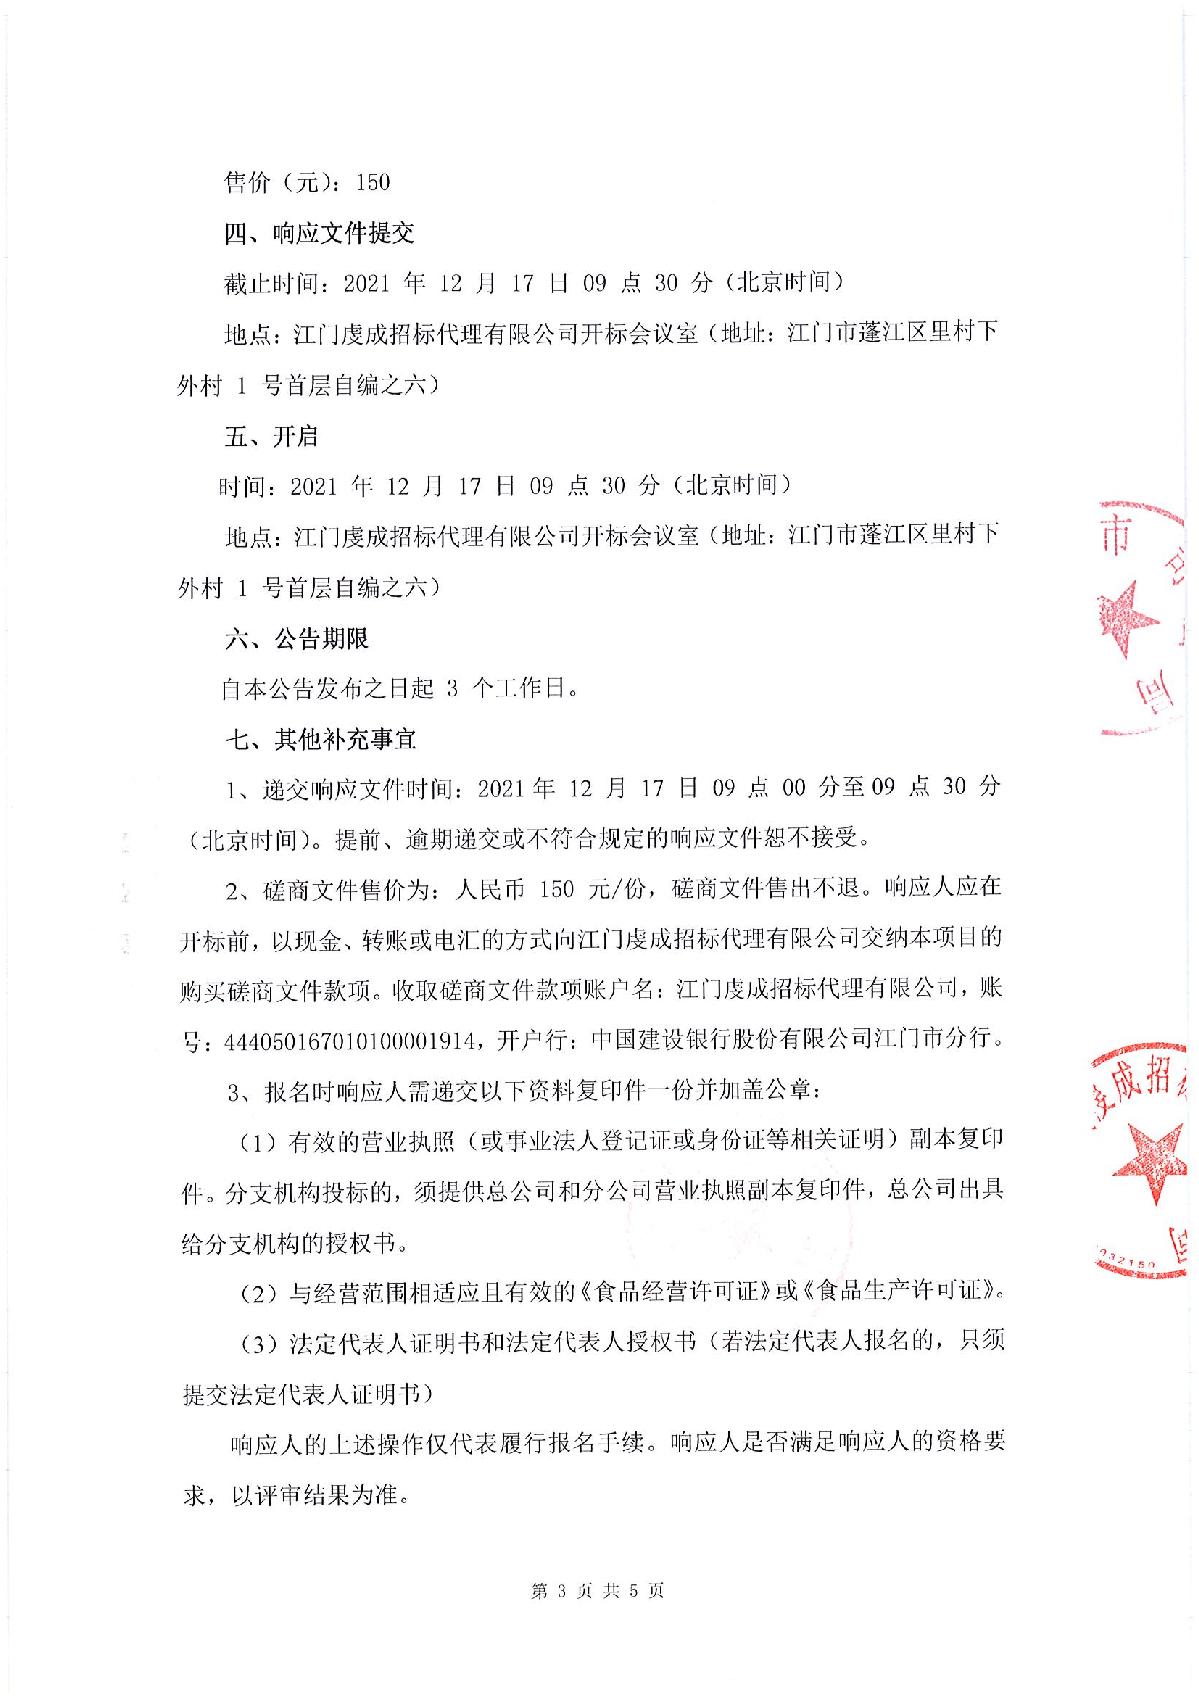 采购邀请函-江门市司法局食堂食材配送采购项目_3.JPG